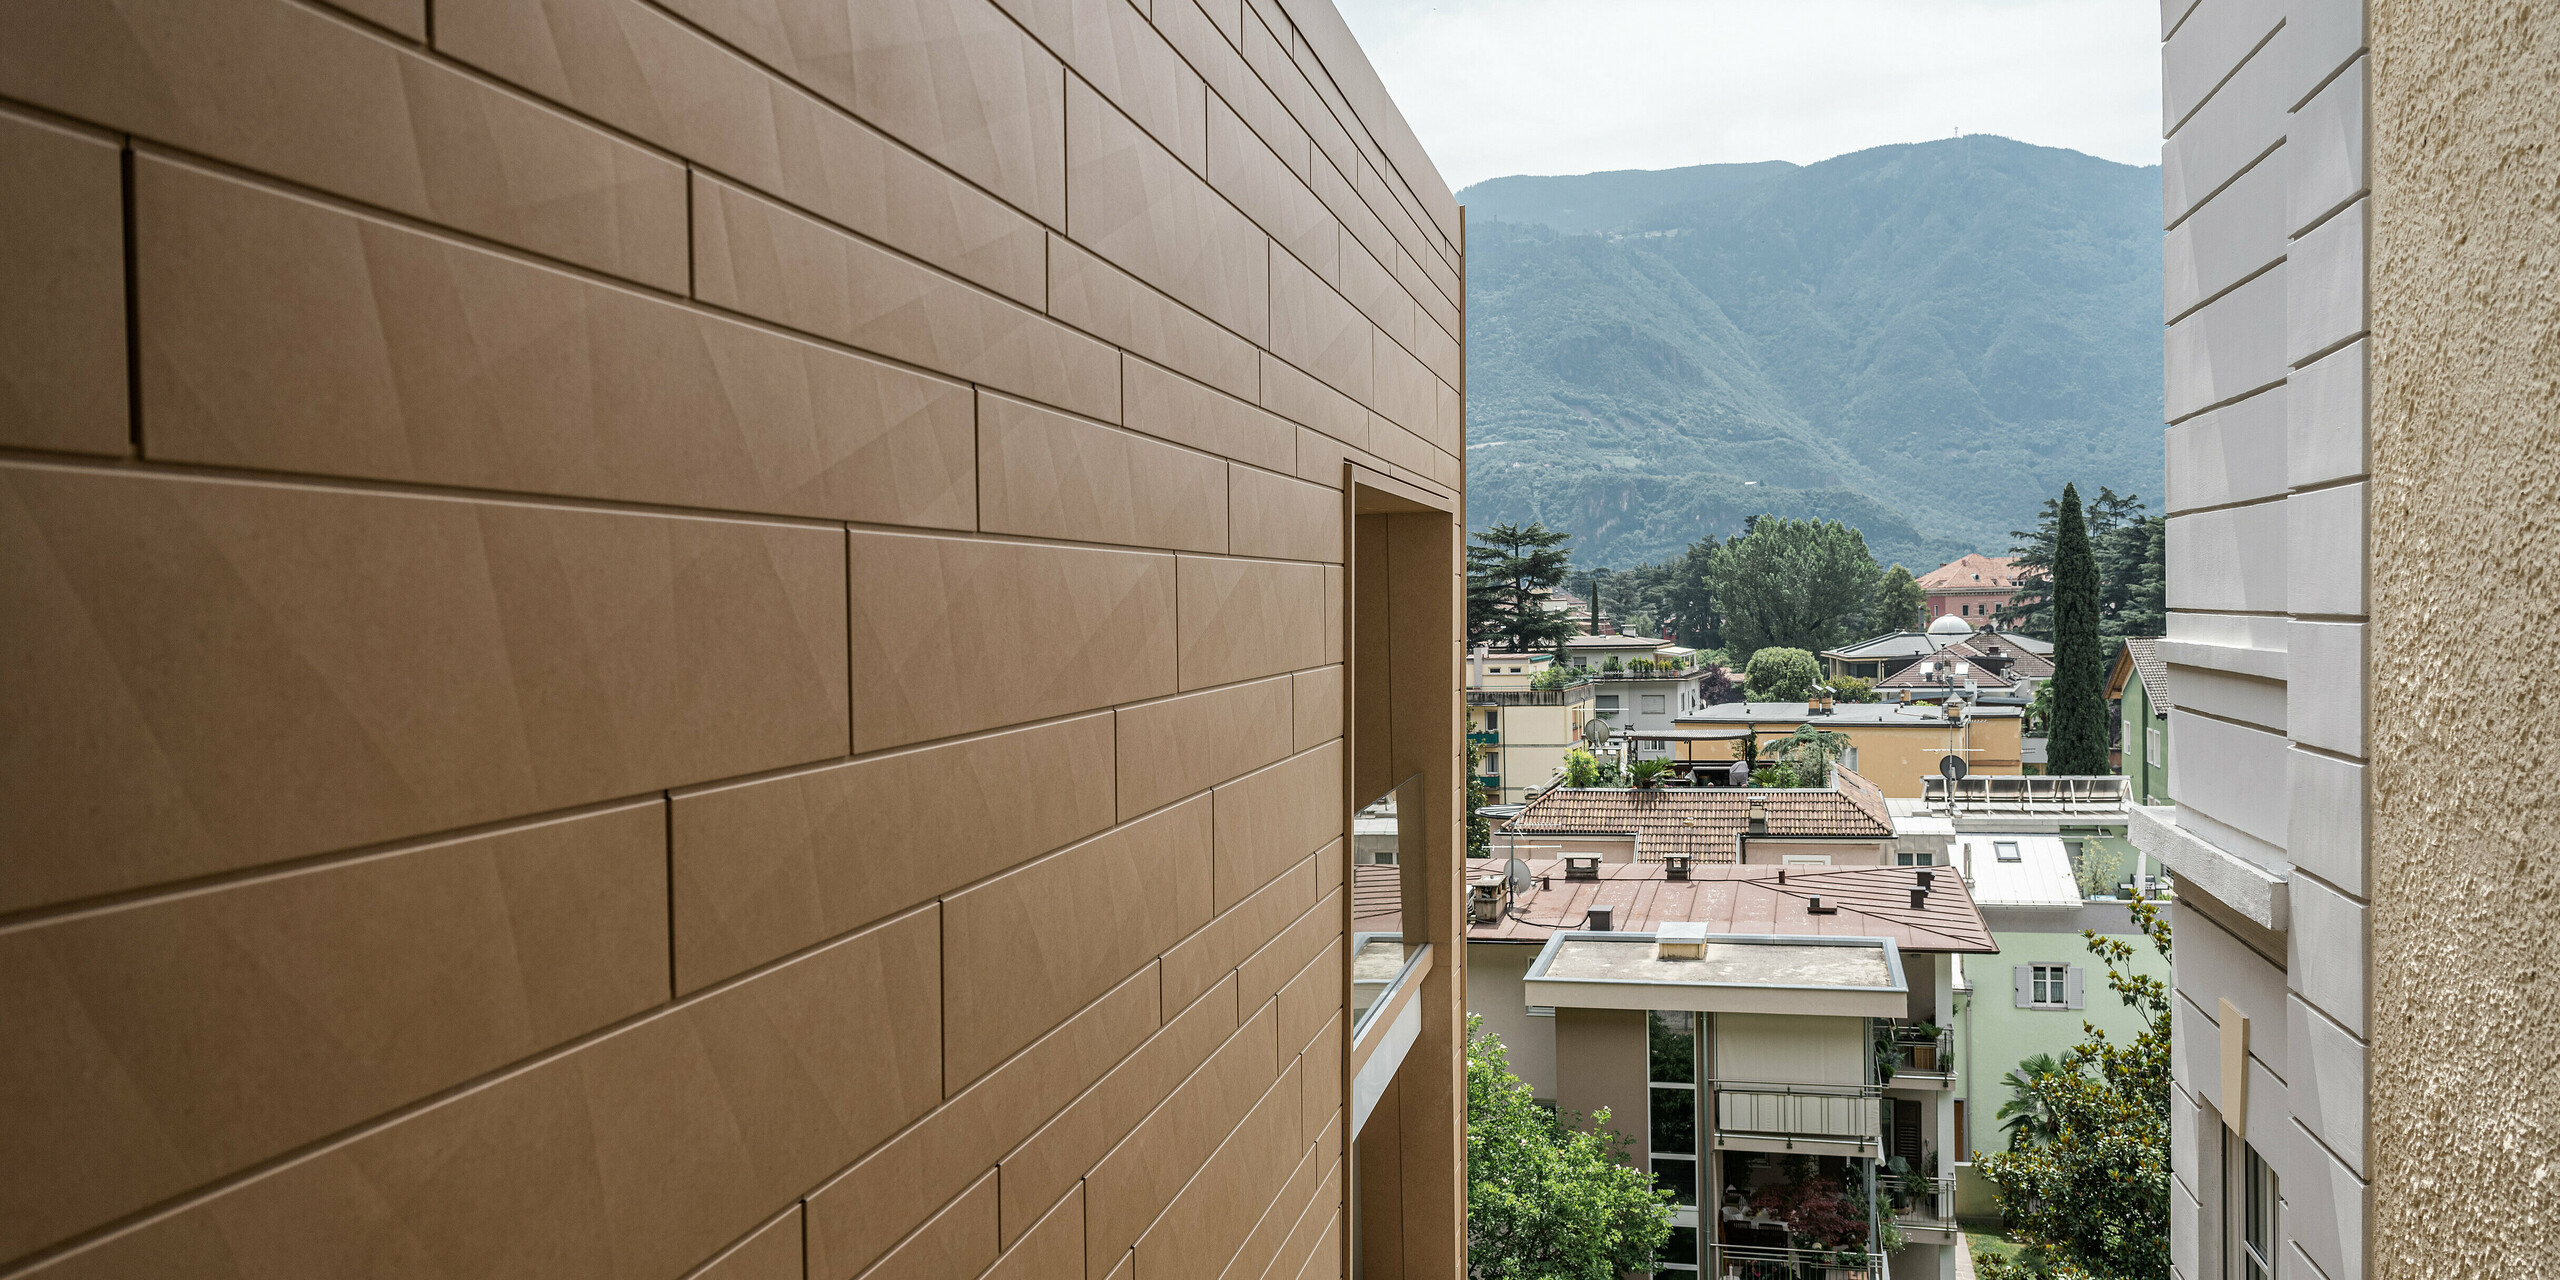 Detailaufnahme der modernen PREFA Siding.X Fassade in P.10 Sandbraun an der Villa Laura in Bozen, Italien. Die harmonisch gefügten Aluminiumelemente bieten eine langlebige und ästhetische Lösung, die sich anmutig in die malerische Bergkulisse Südtirols einfügt. Die Fassade spiegelt die Innovation und Qualität wider, für die PREFA Aluminiumprodukte bekannt sind. Zudem setzt die Gebäudehülle aus Aluminium einen warmen Farbakzent in der urbanen Landschaft.